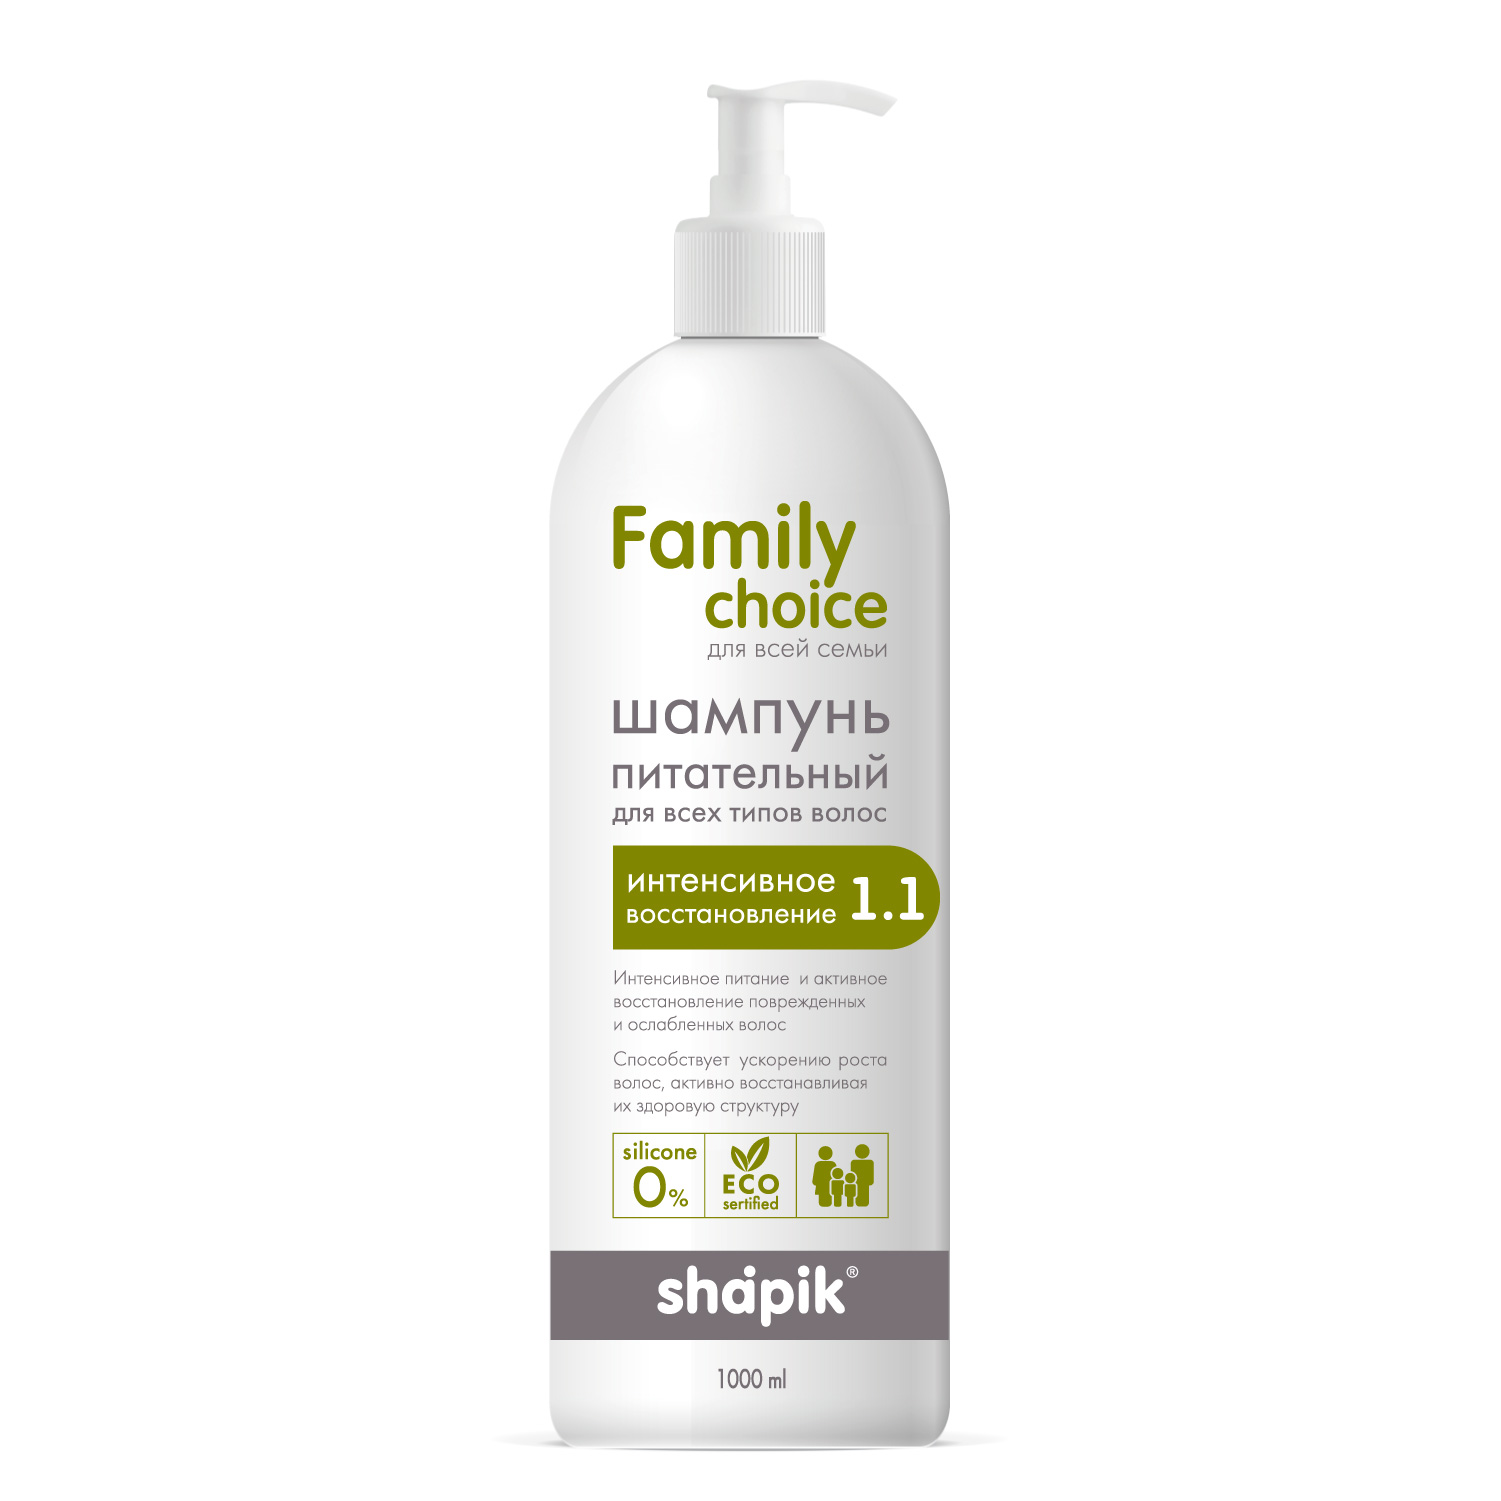 Шампунь питательный для всех типов волос серии Shapik Family Есо Сhoice, 1000 мл.